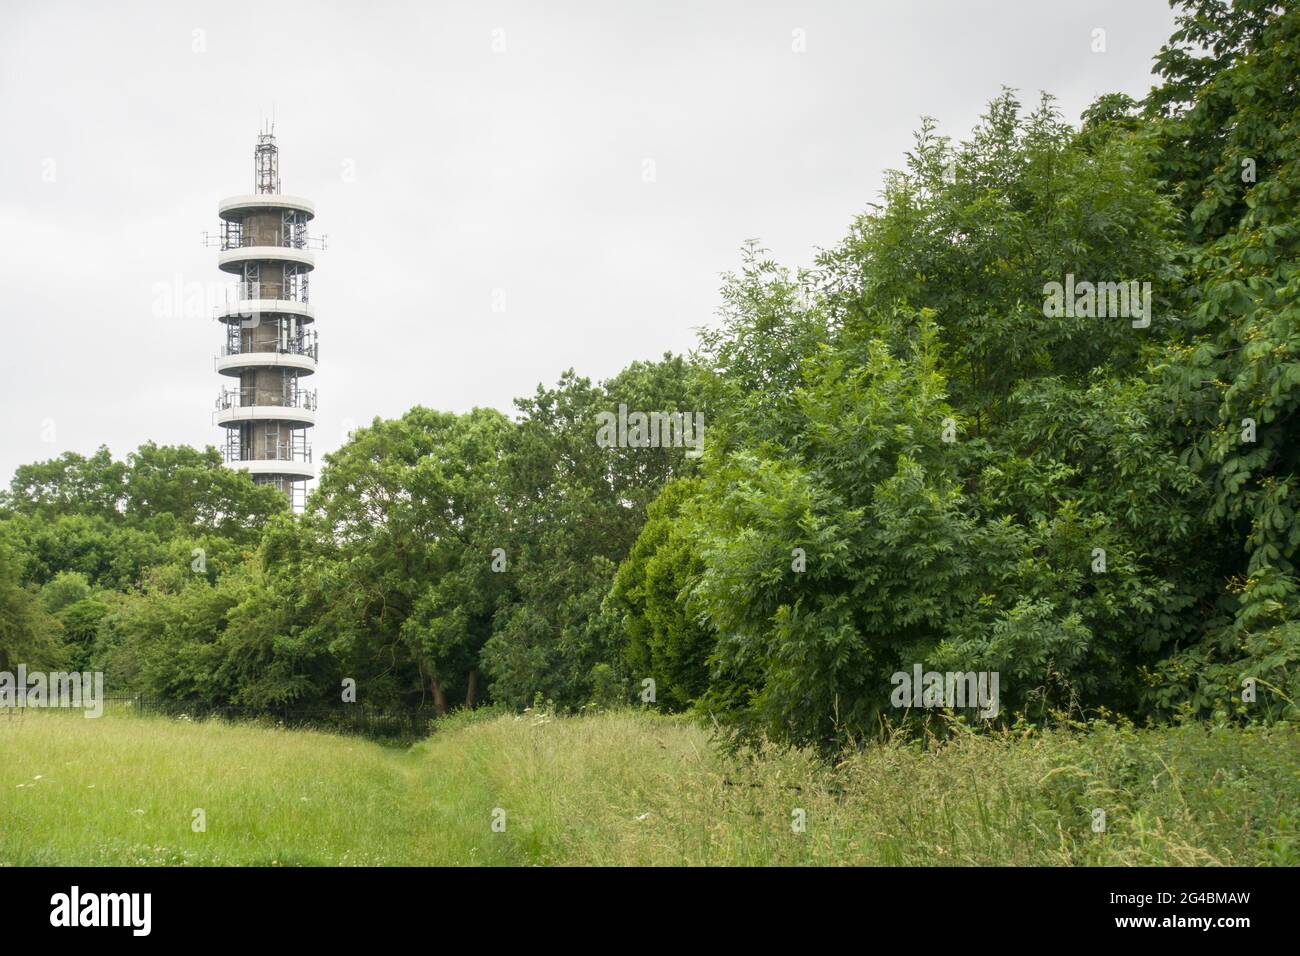 Purdown BT Tower à Stoke Park, Bristol, une tour de télécommunications en béton armé de 1970. Banque D'Images